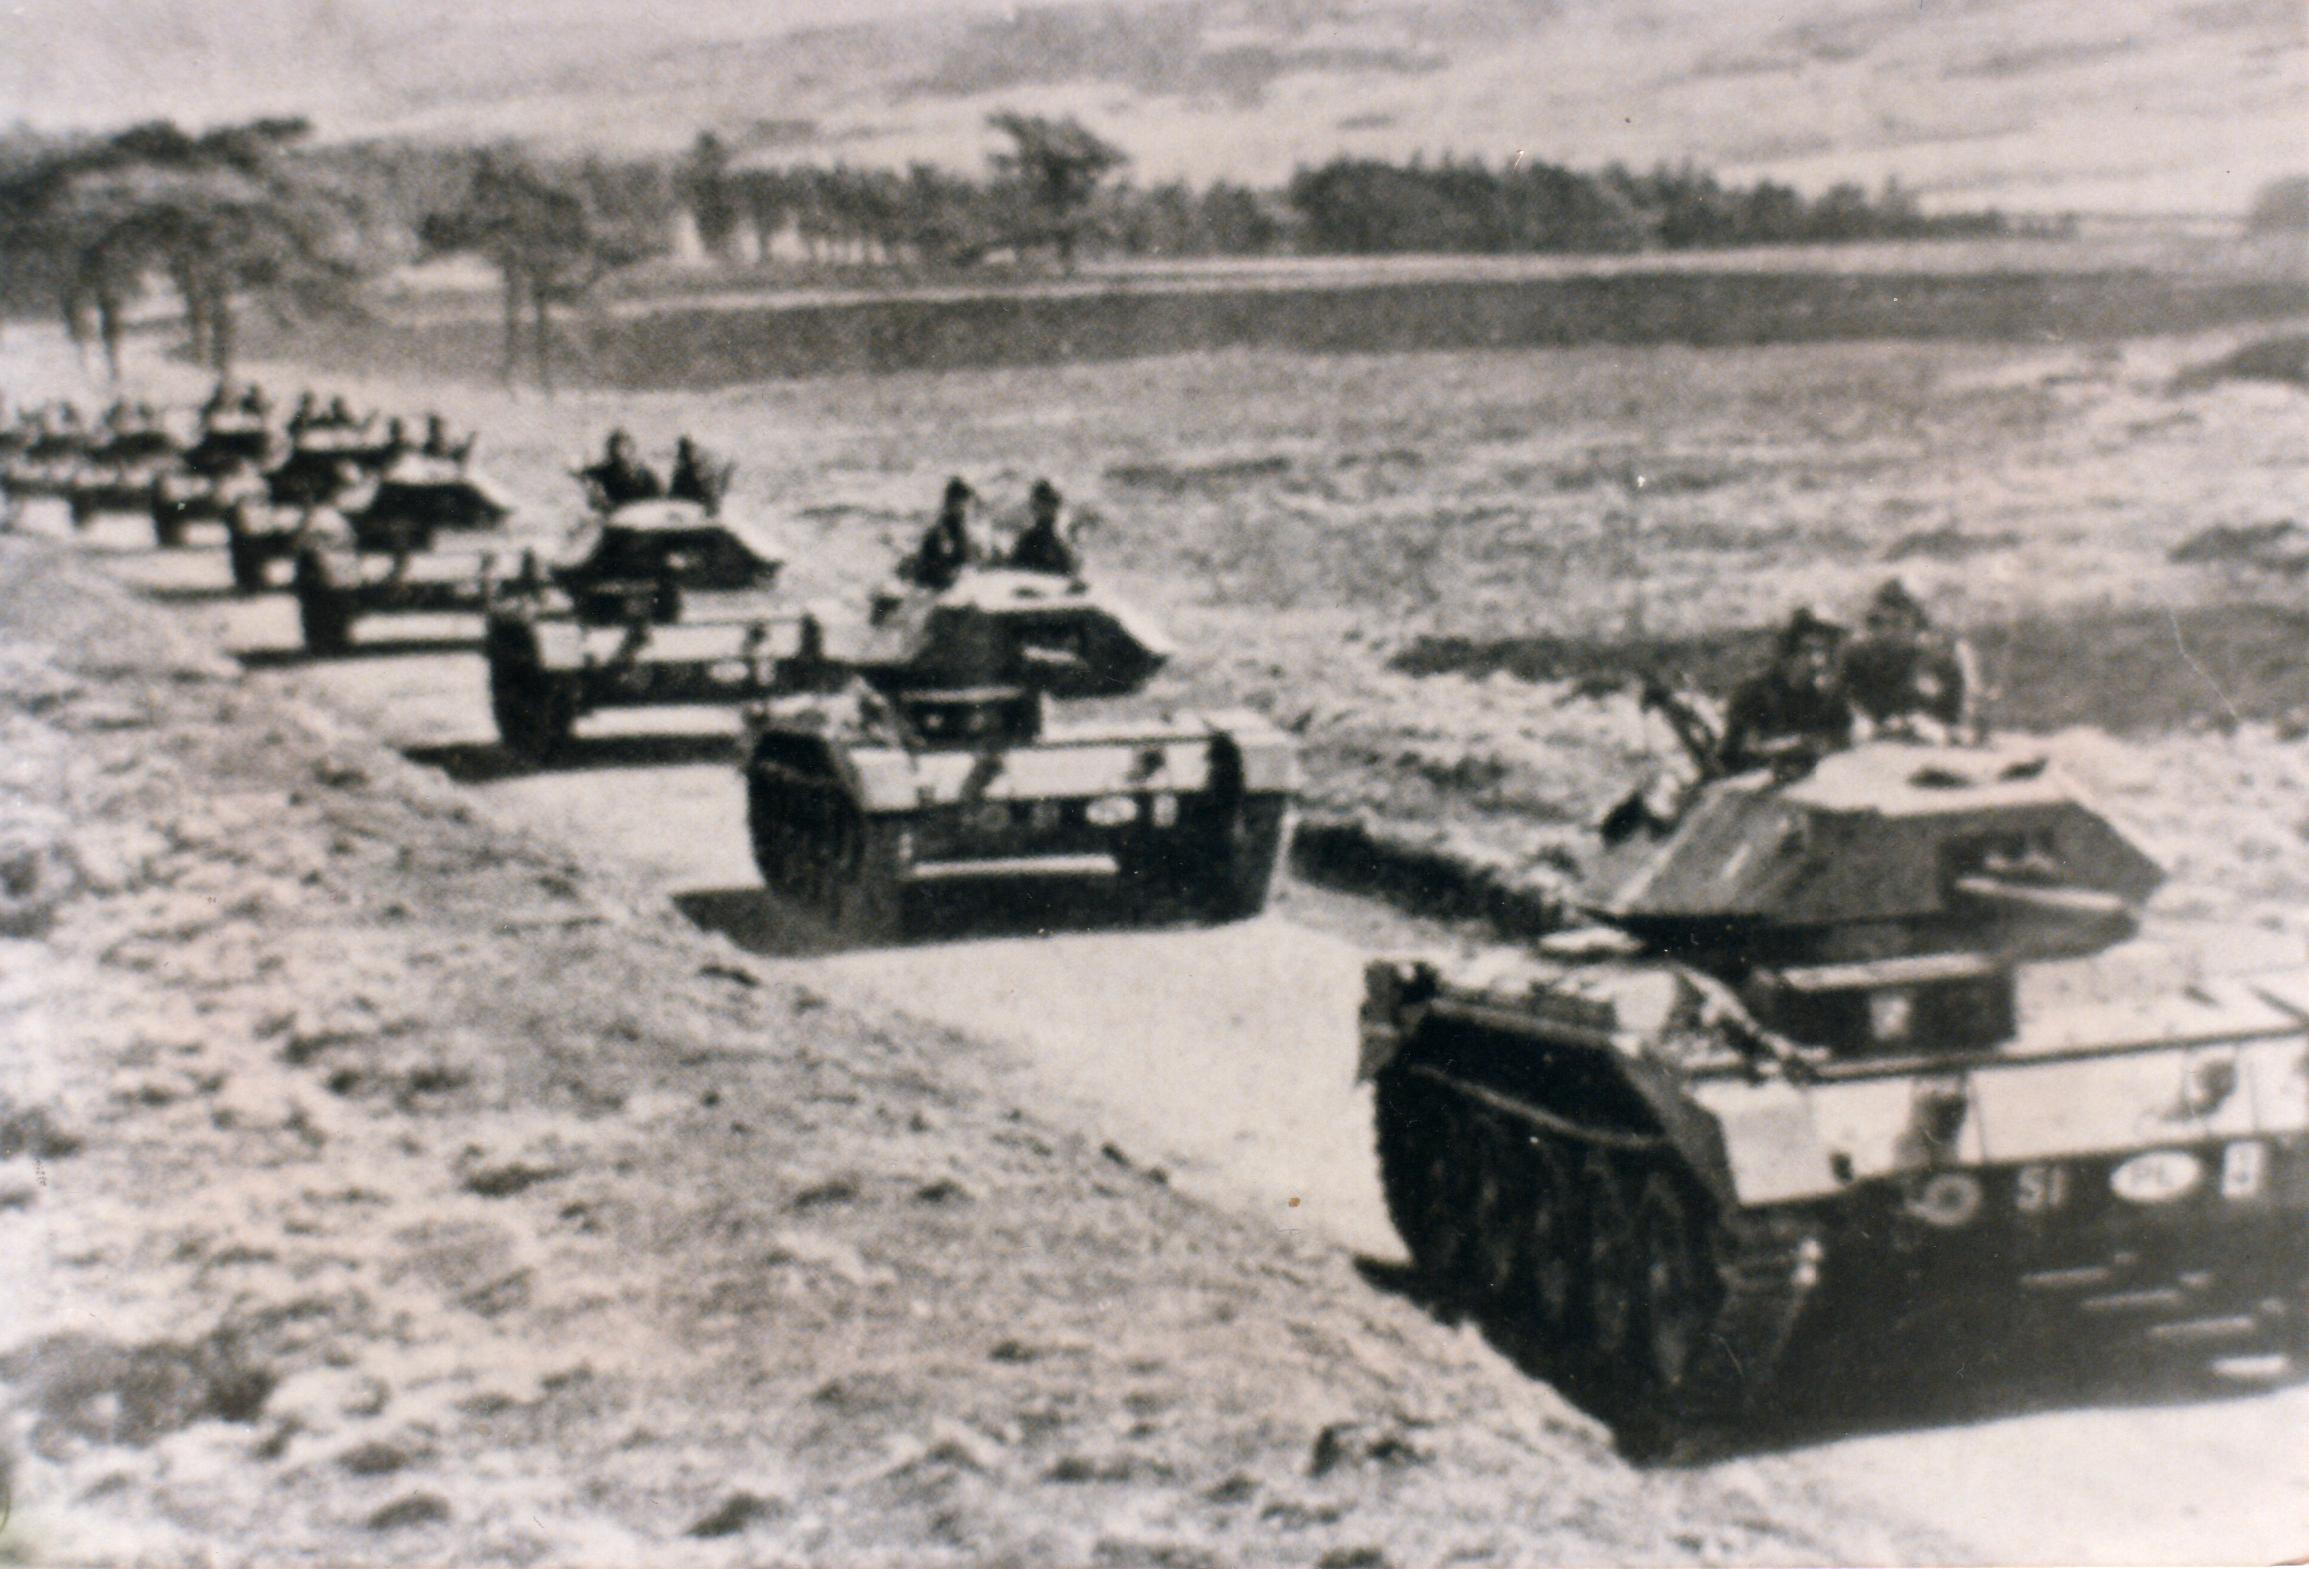 Polish tanks, Whiteadder b & w.jpg